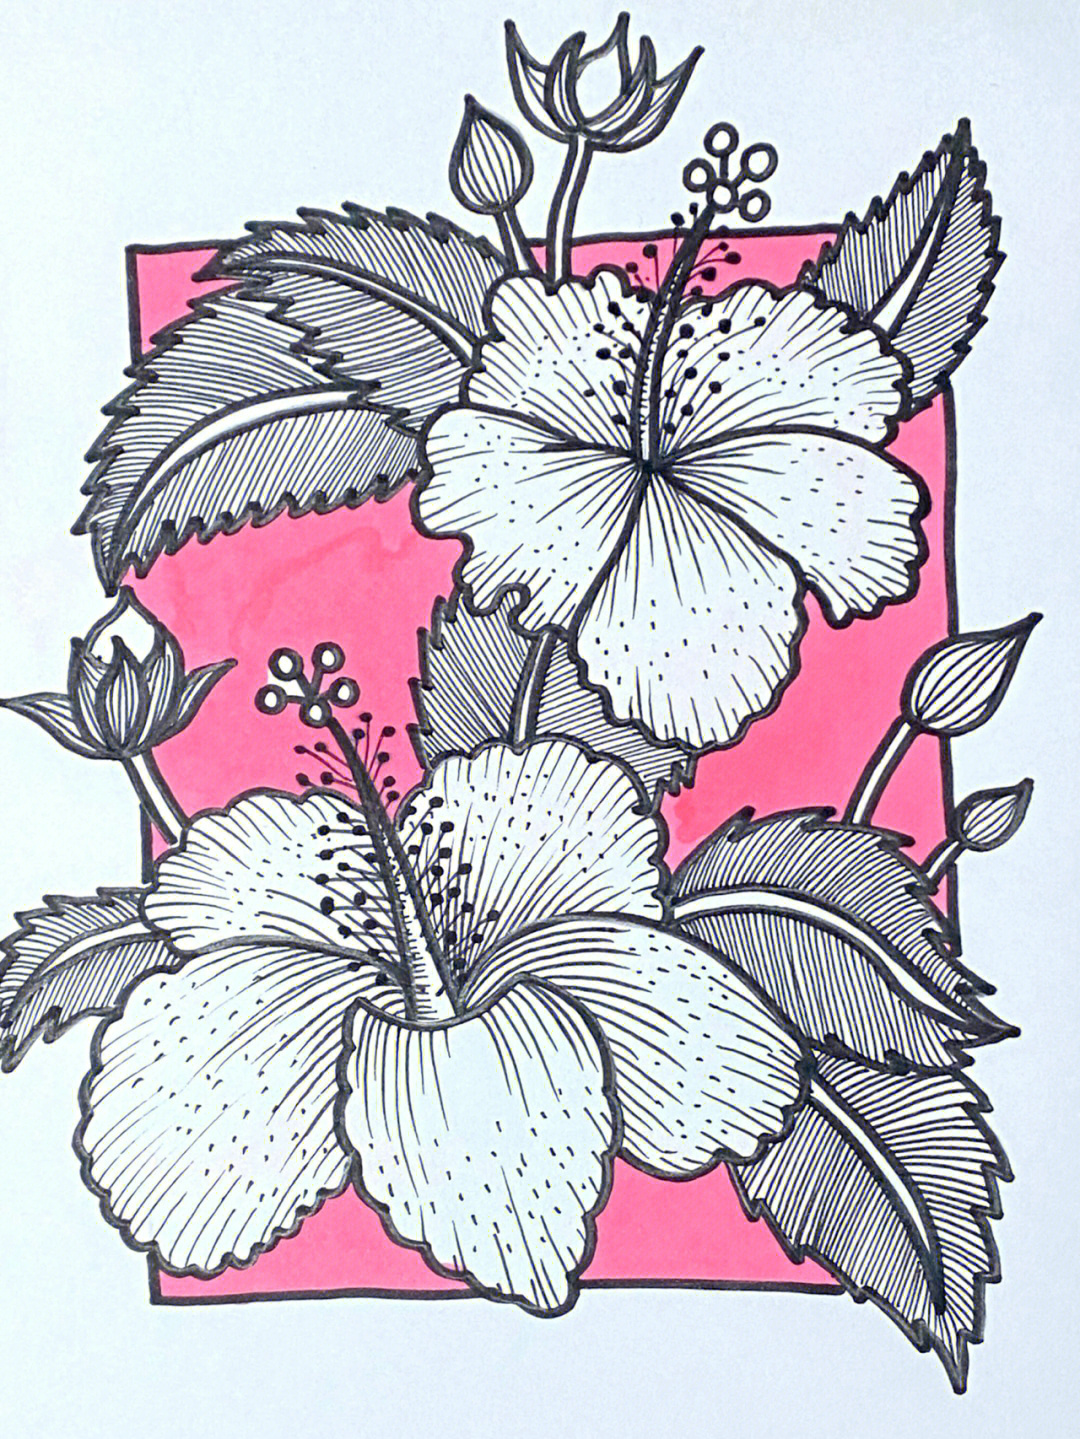 96那么今天这张:画种:线描作品名称:花卉植物创作时长:1小时创作